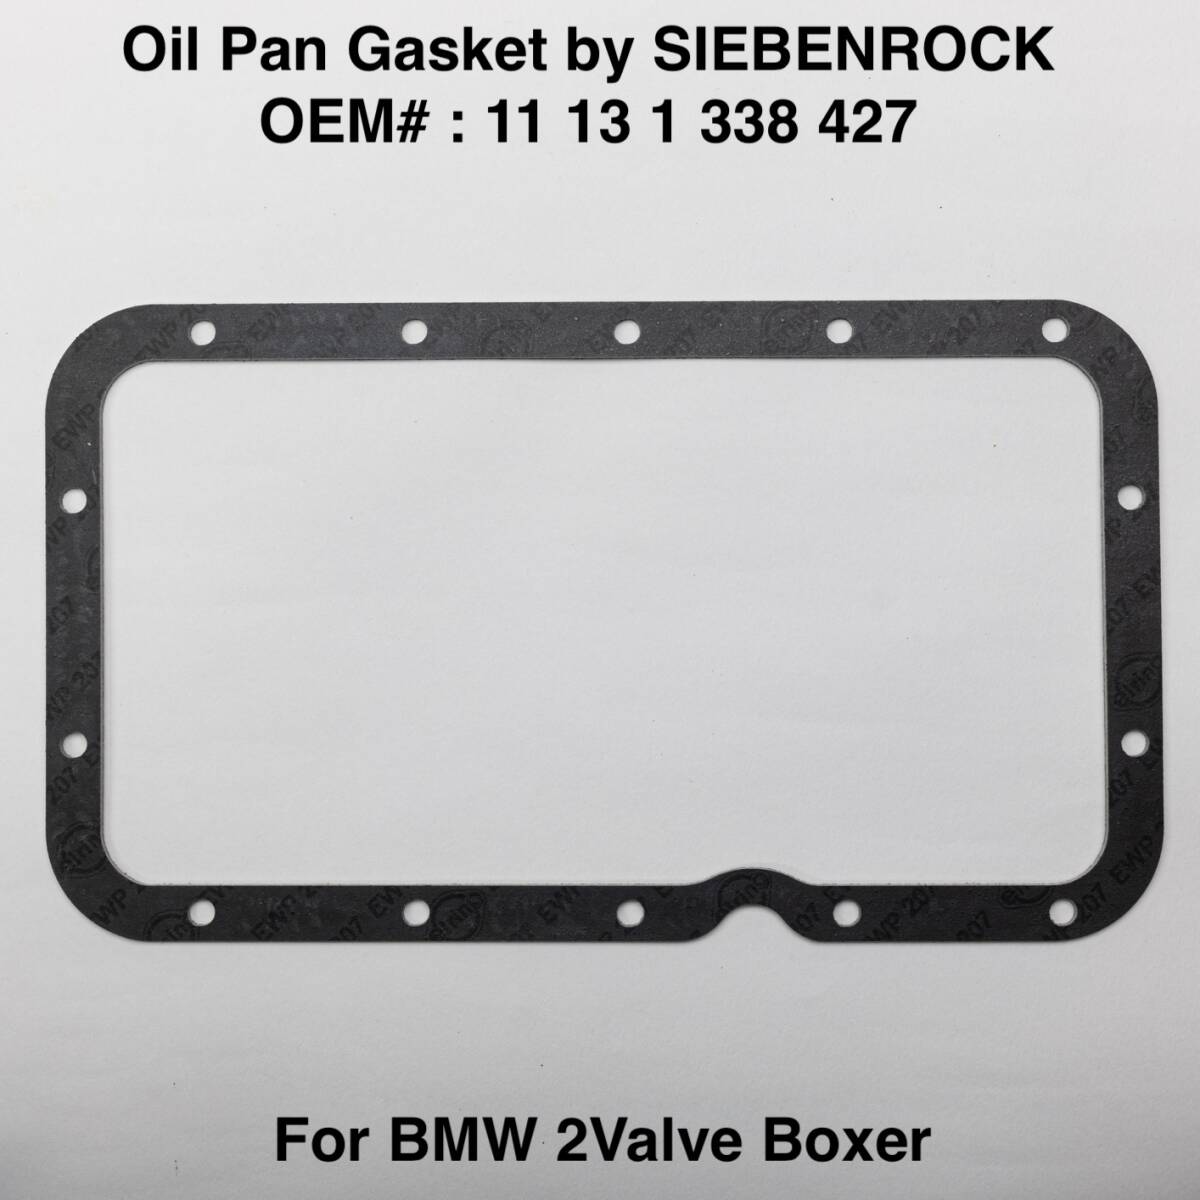 BMW 2バルブボクサー オイルパン ガスケット Made by SIEBENROCK OEM : 11 13 1 336 995 R100RS R100RT R50/5 R75/5 R90Sの画像1